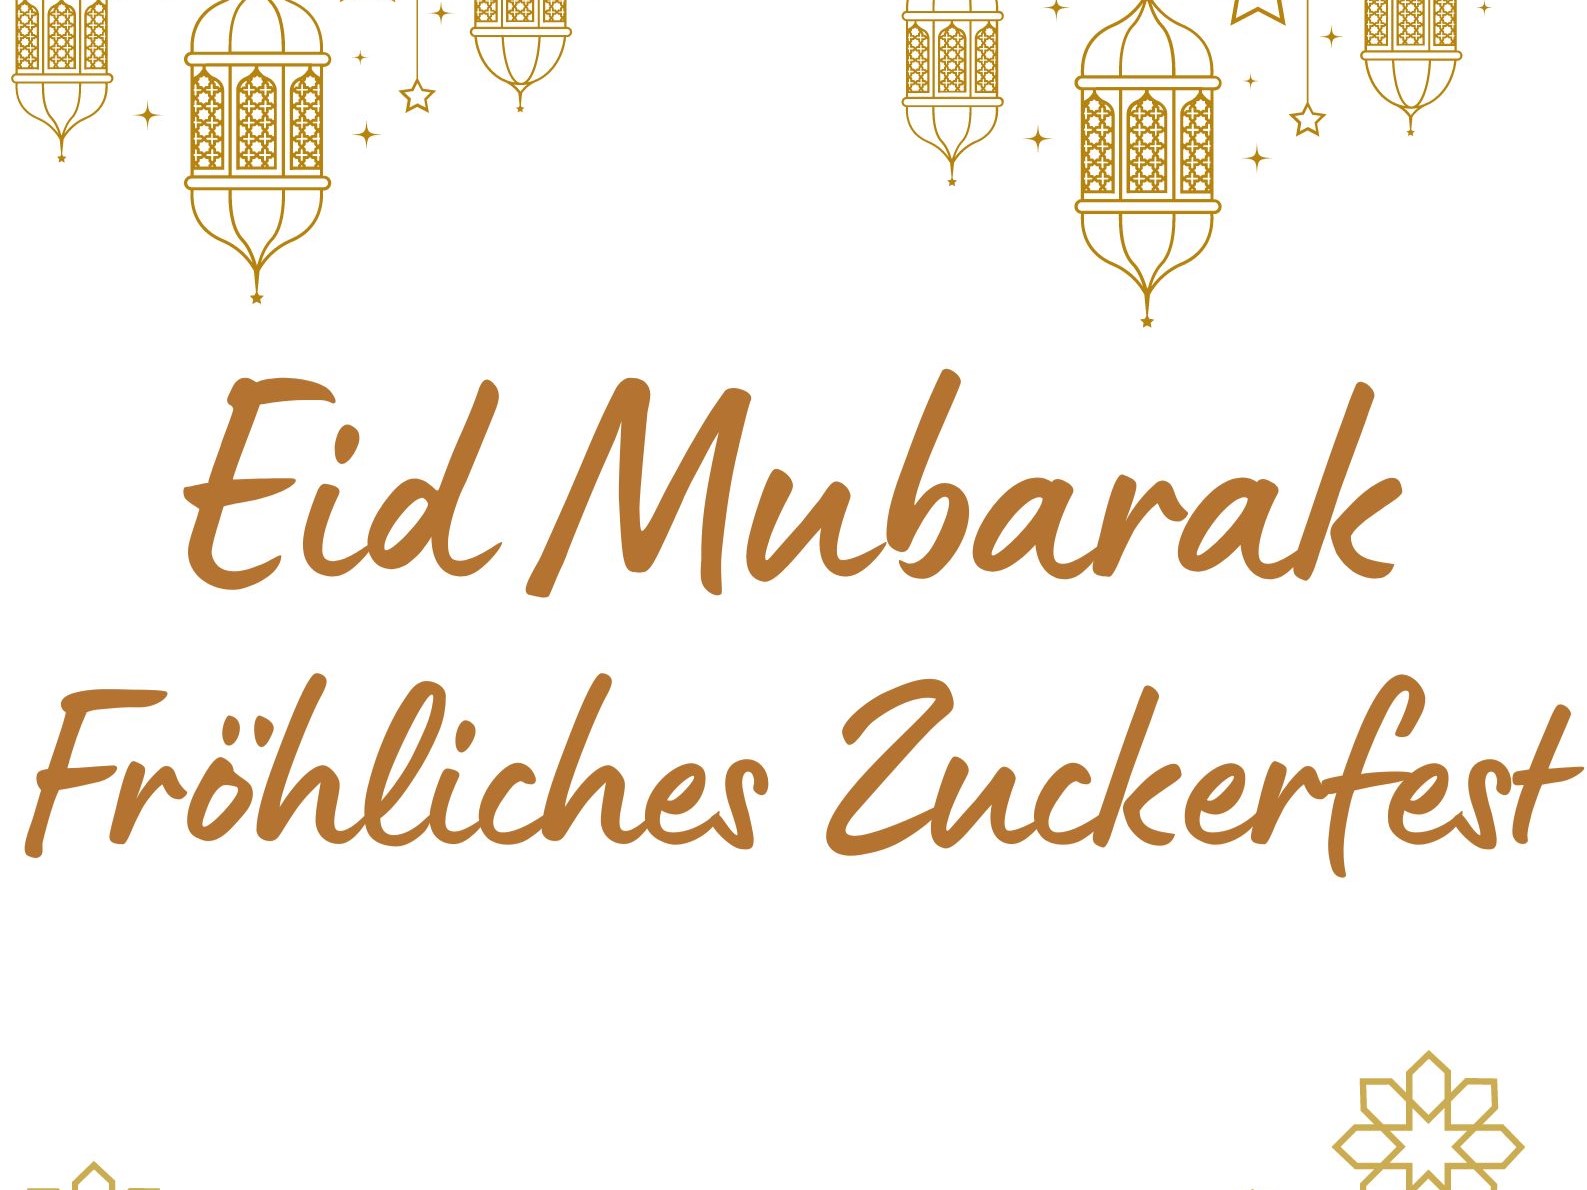 Eid Mubarak Frohliches Zuckerfest1